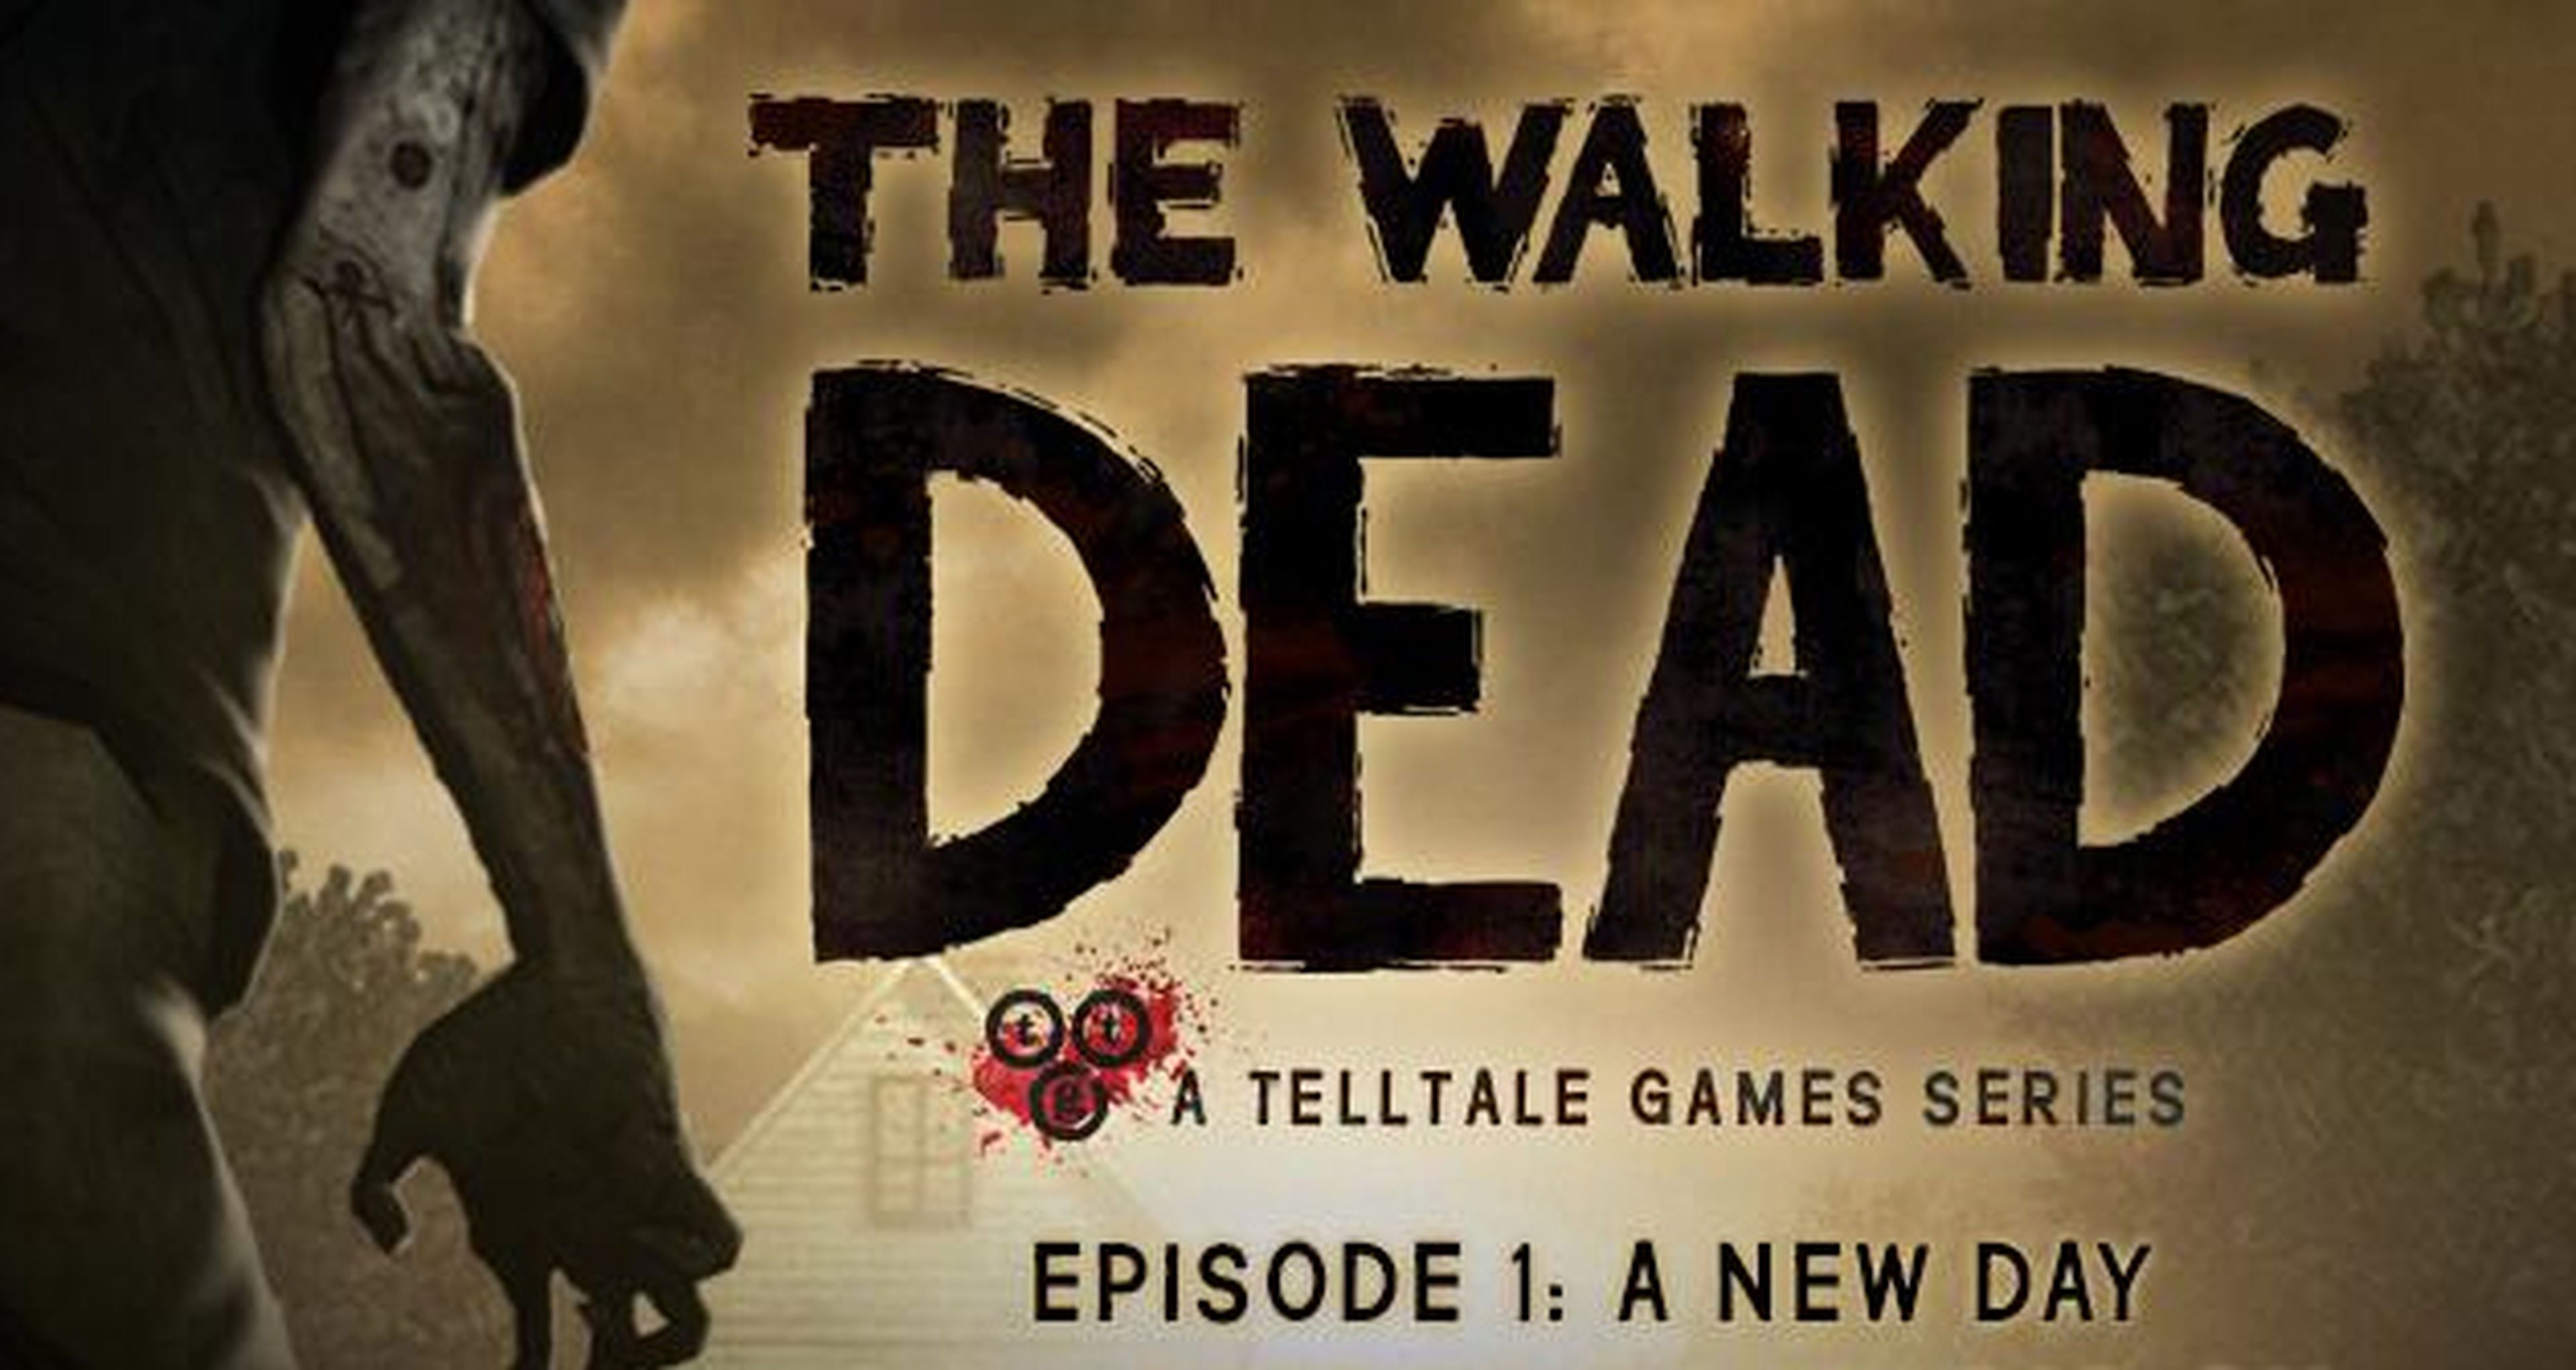 The Walking Dead Episode 1 gratis en Xbox 360